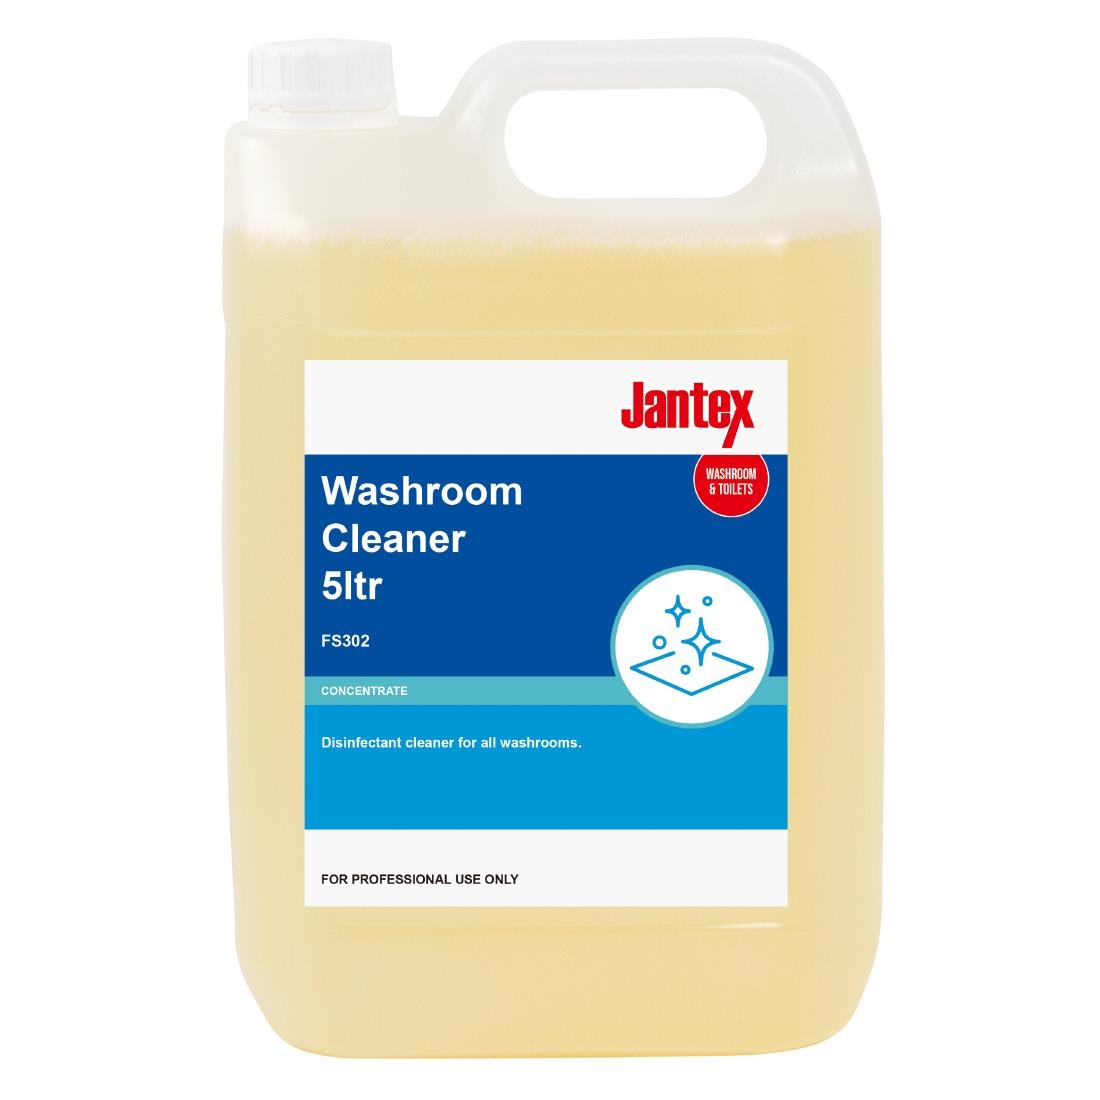 Jantex Washroom Cleaner Concentrate 5Ltr